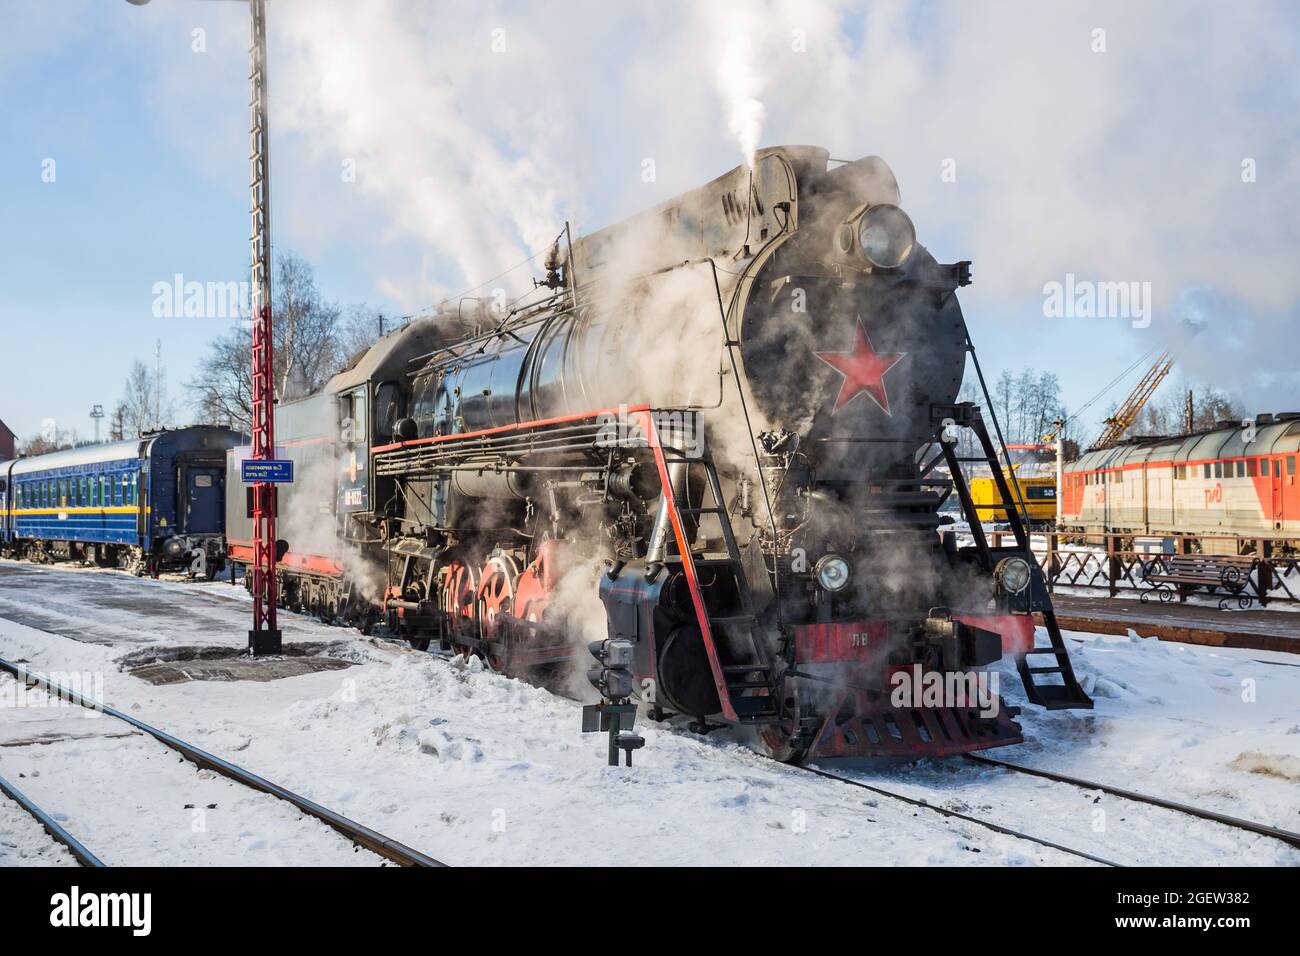 SORTAVALA, RUSSIA - 10 MARZO 2021: Una vecchia locomotiva a vapore sovietica si aggrappa ad un treno passeggeri alla stazione ferroviaria di Sortavala Foto Stock